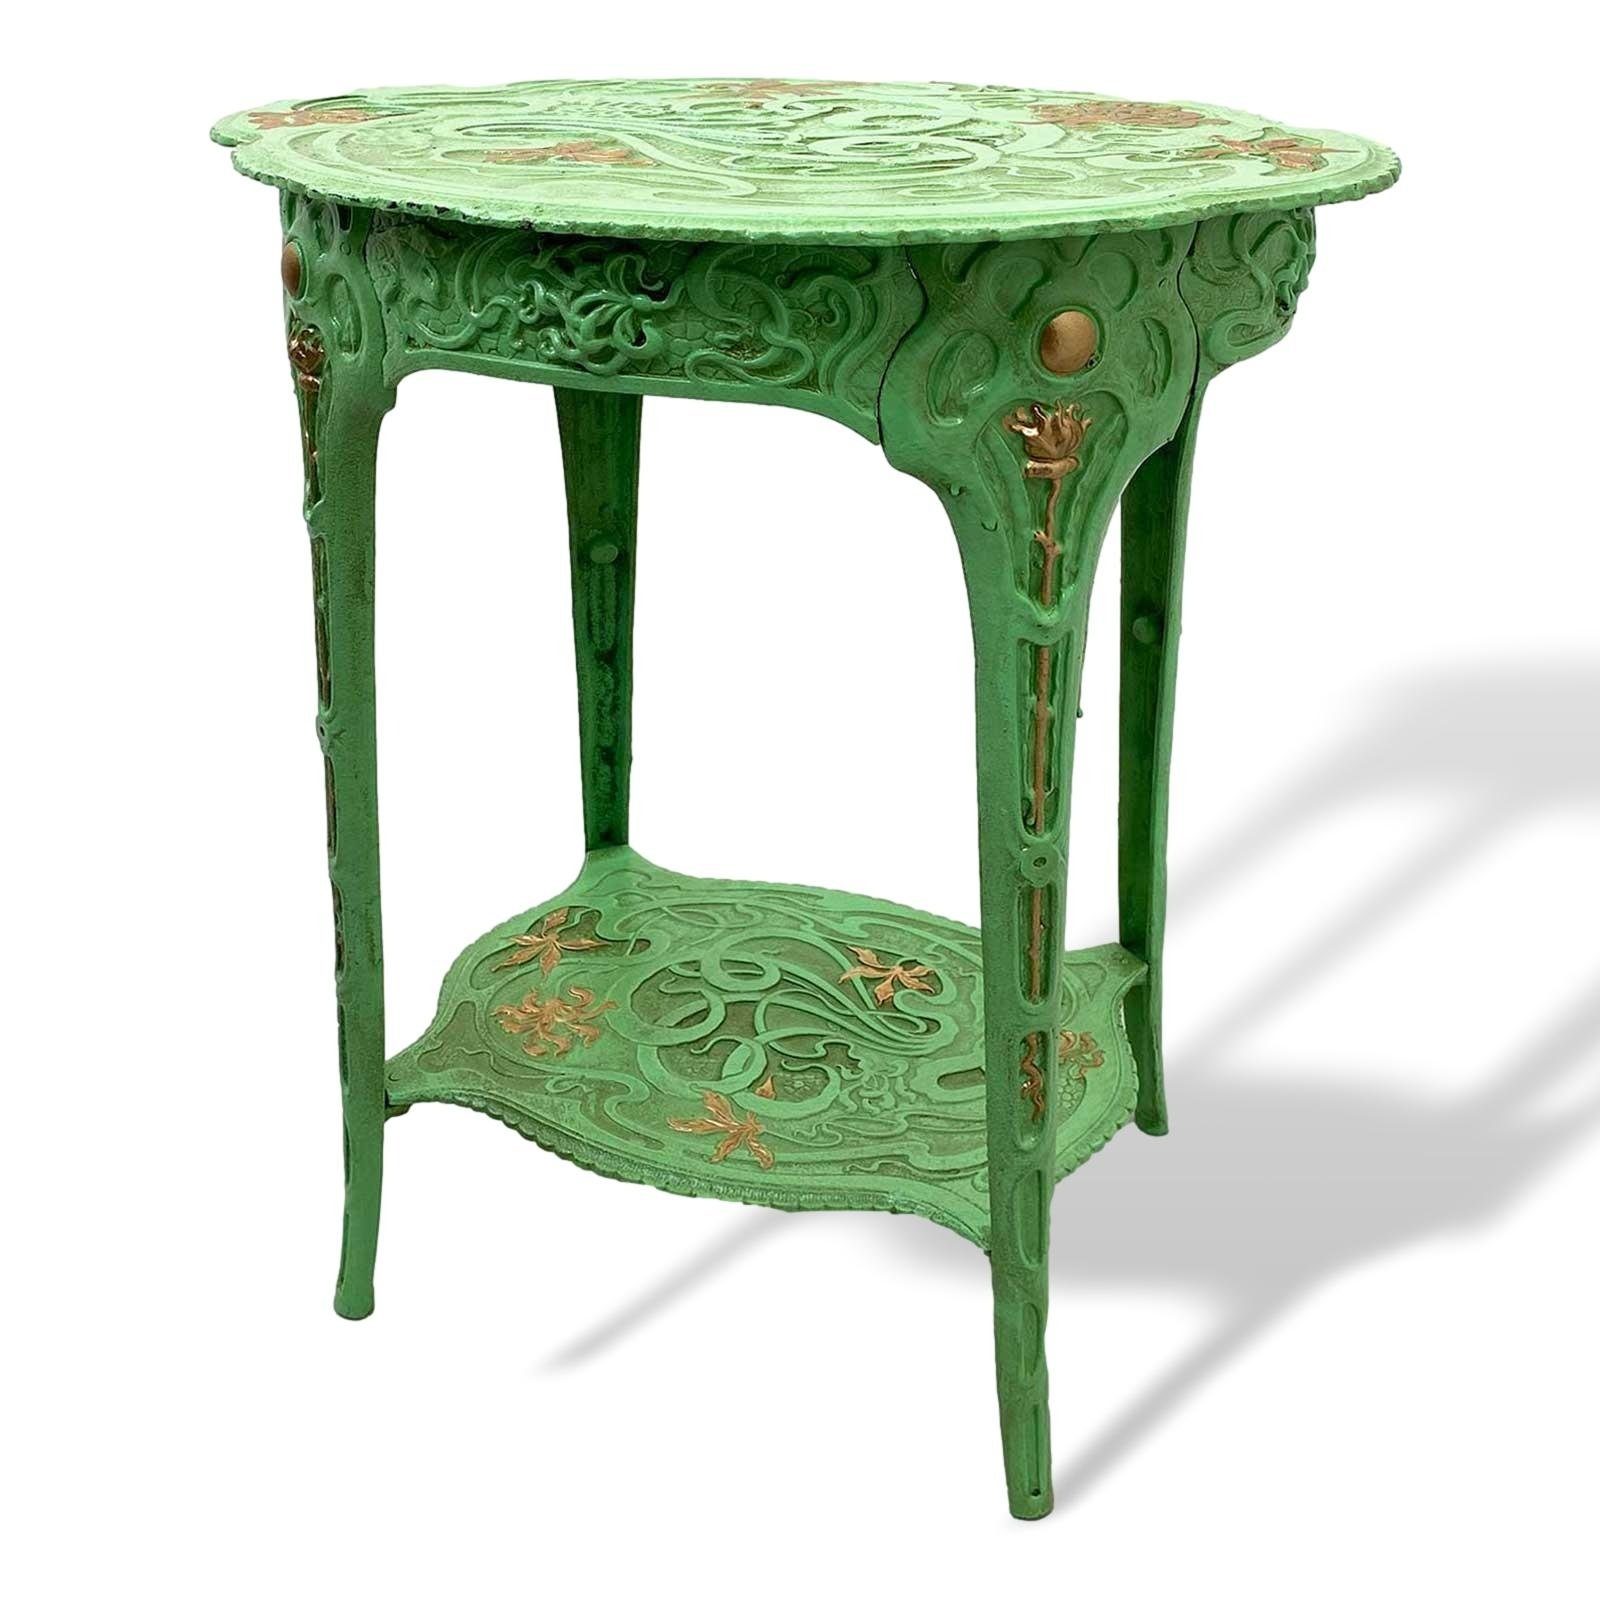 Aubaho Gartentisch Tisch Beistelltisch Eisen grün Blumen Garten Gartentisch Art Nouveau A